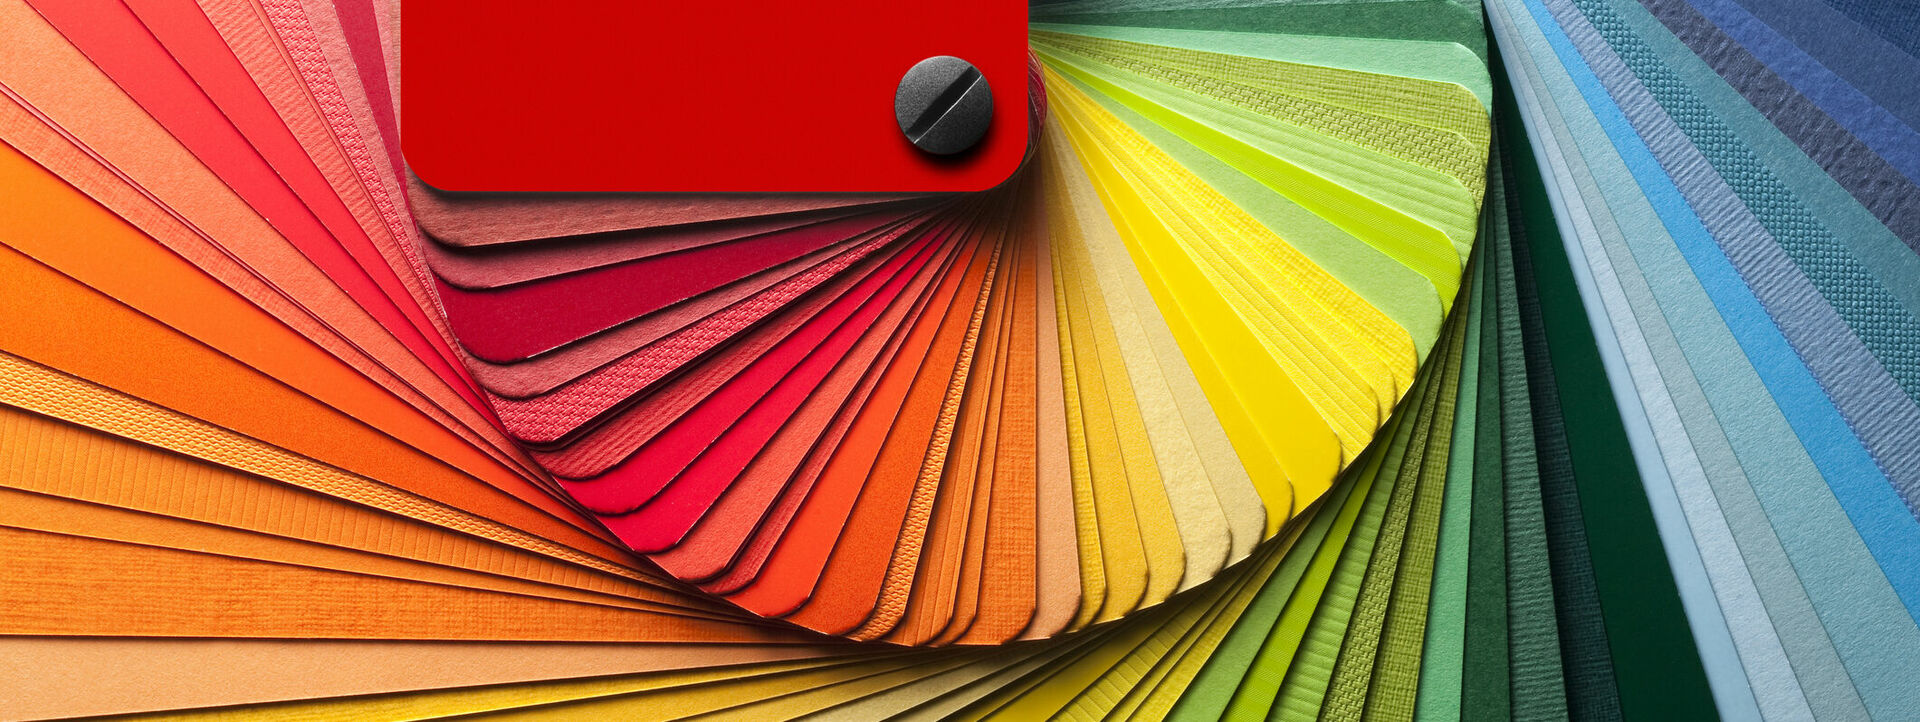 Aufgefächerte Farbkarte mit Farbverlauf